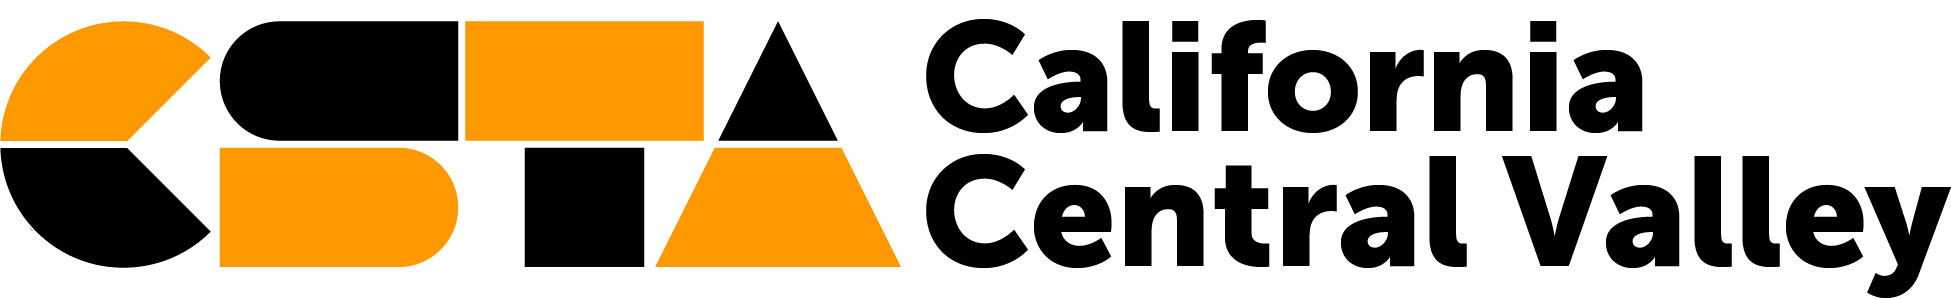 CSTA California Central Valley logo